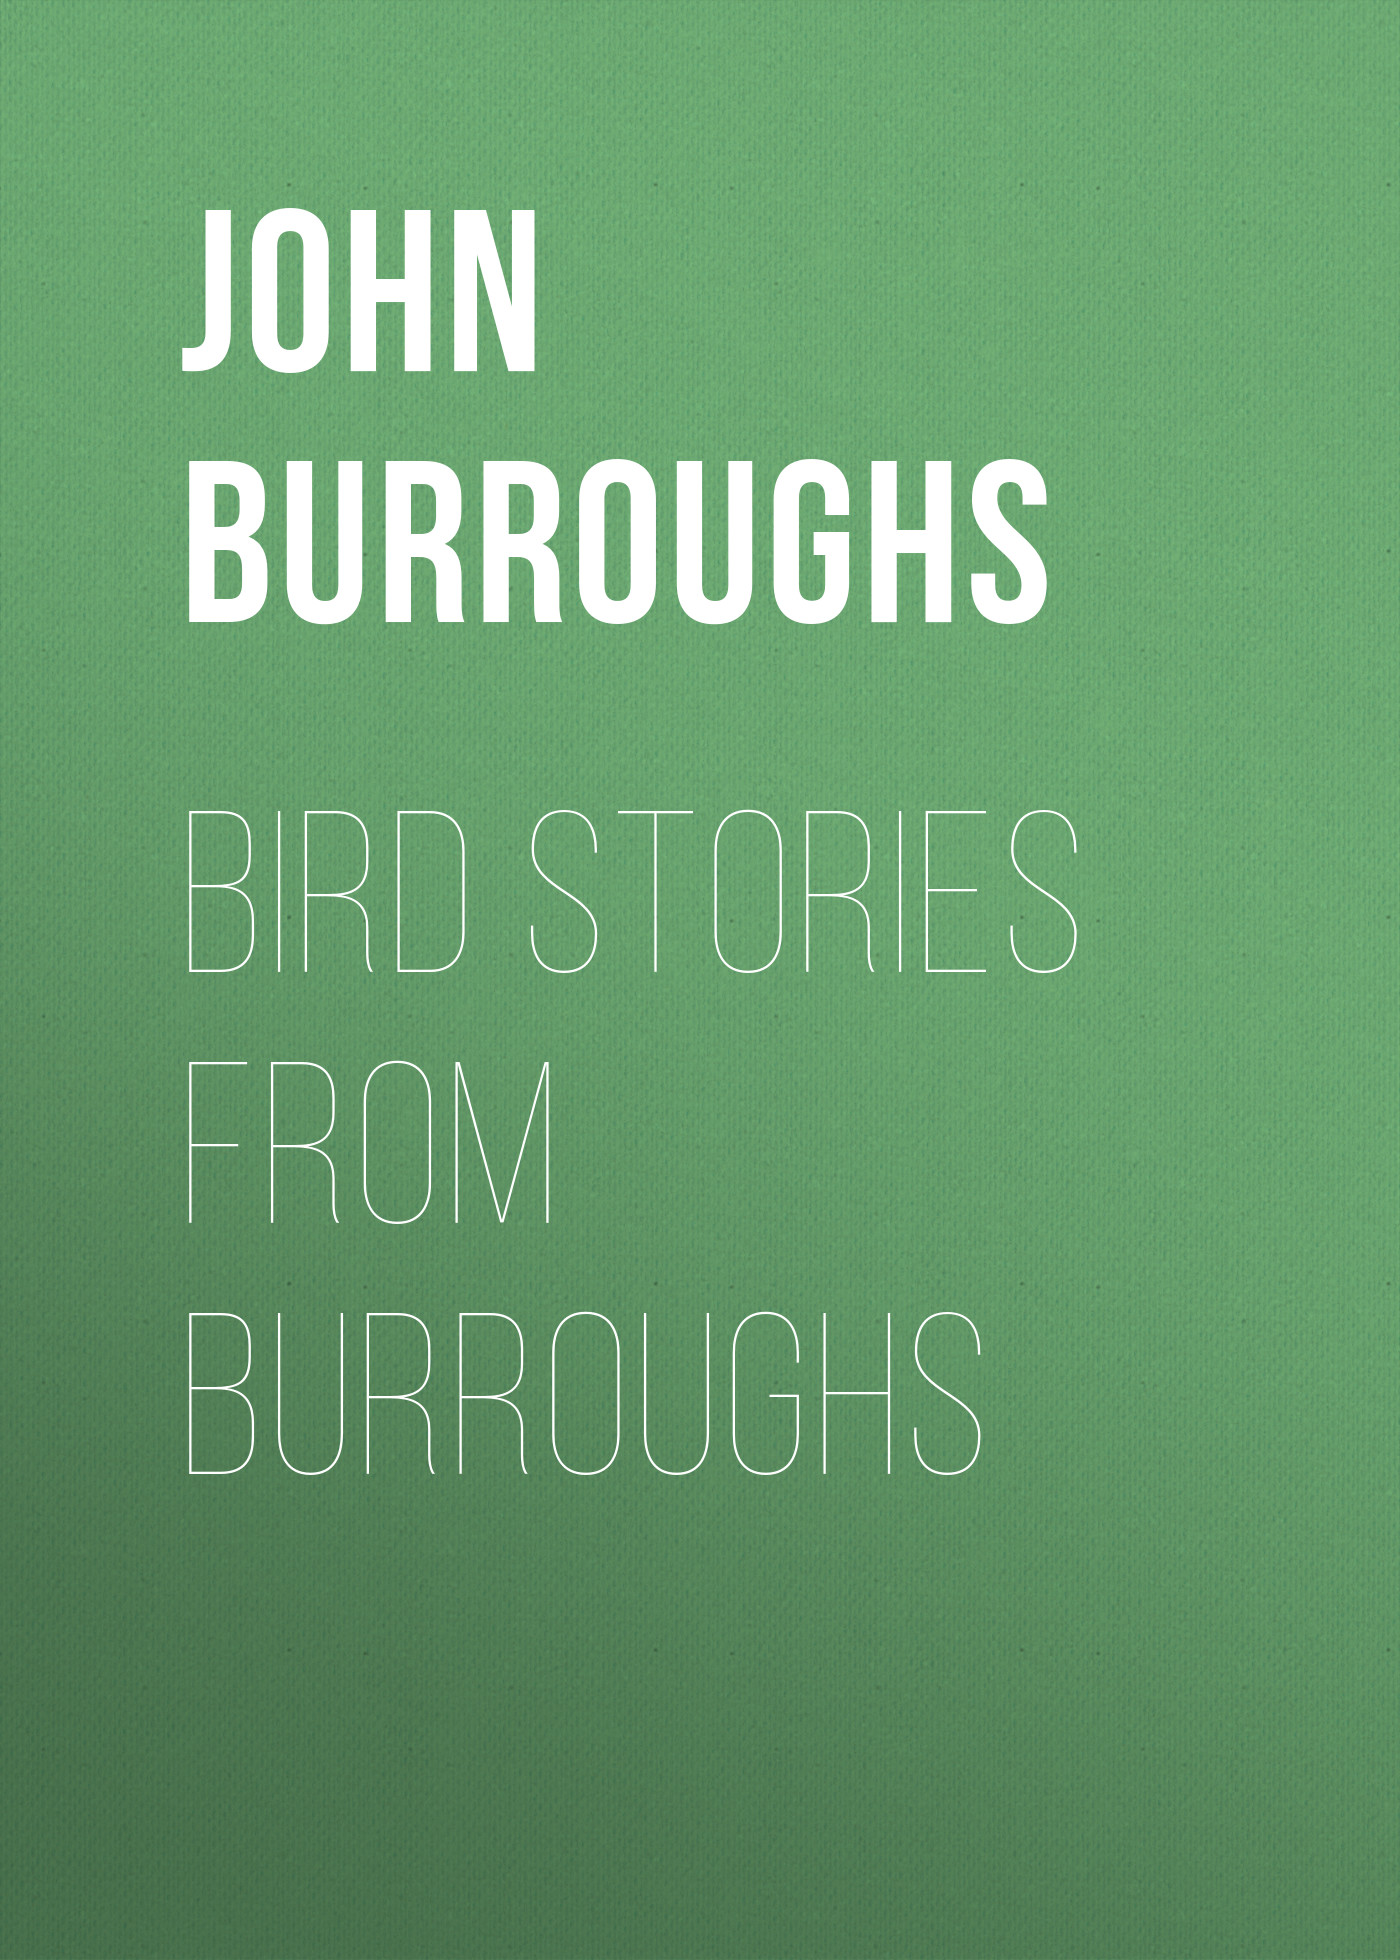 Книга Bird Stories from Burroughs из серии , созданная John Burroughs, может относится к жанру Зарубежная старинная литература, Зарубежная классика. Стоимость электронной книги Bird Stories from Burroughs с идентификатором 24171980 составляет 0.90 руб.